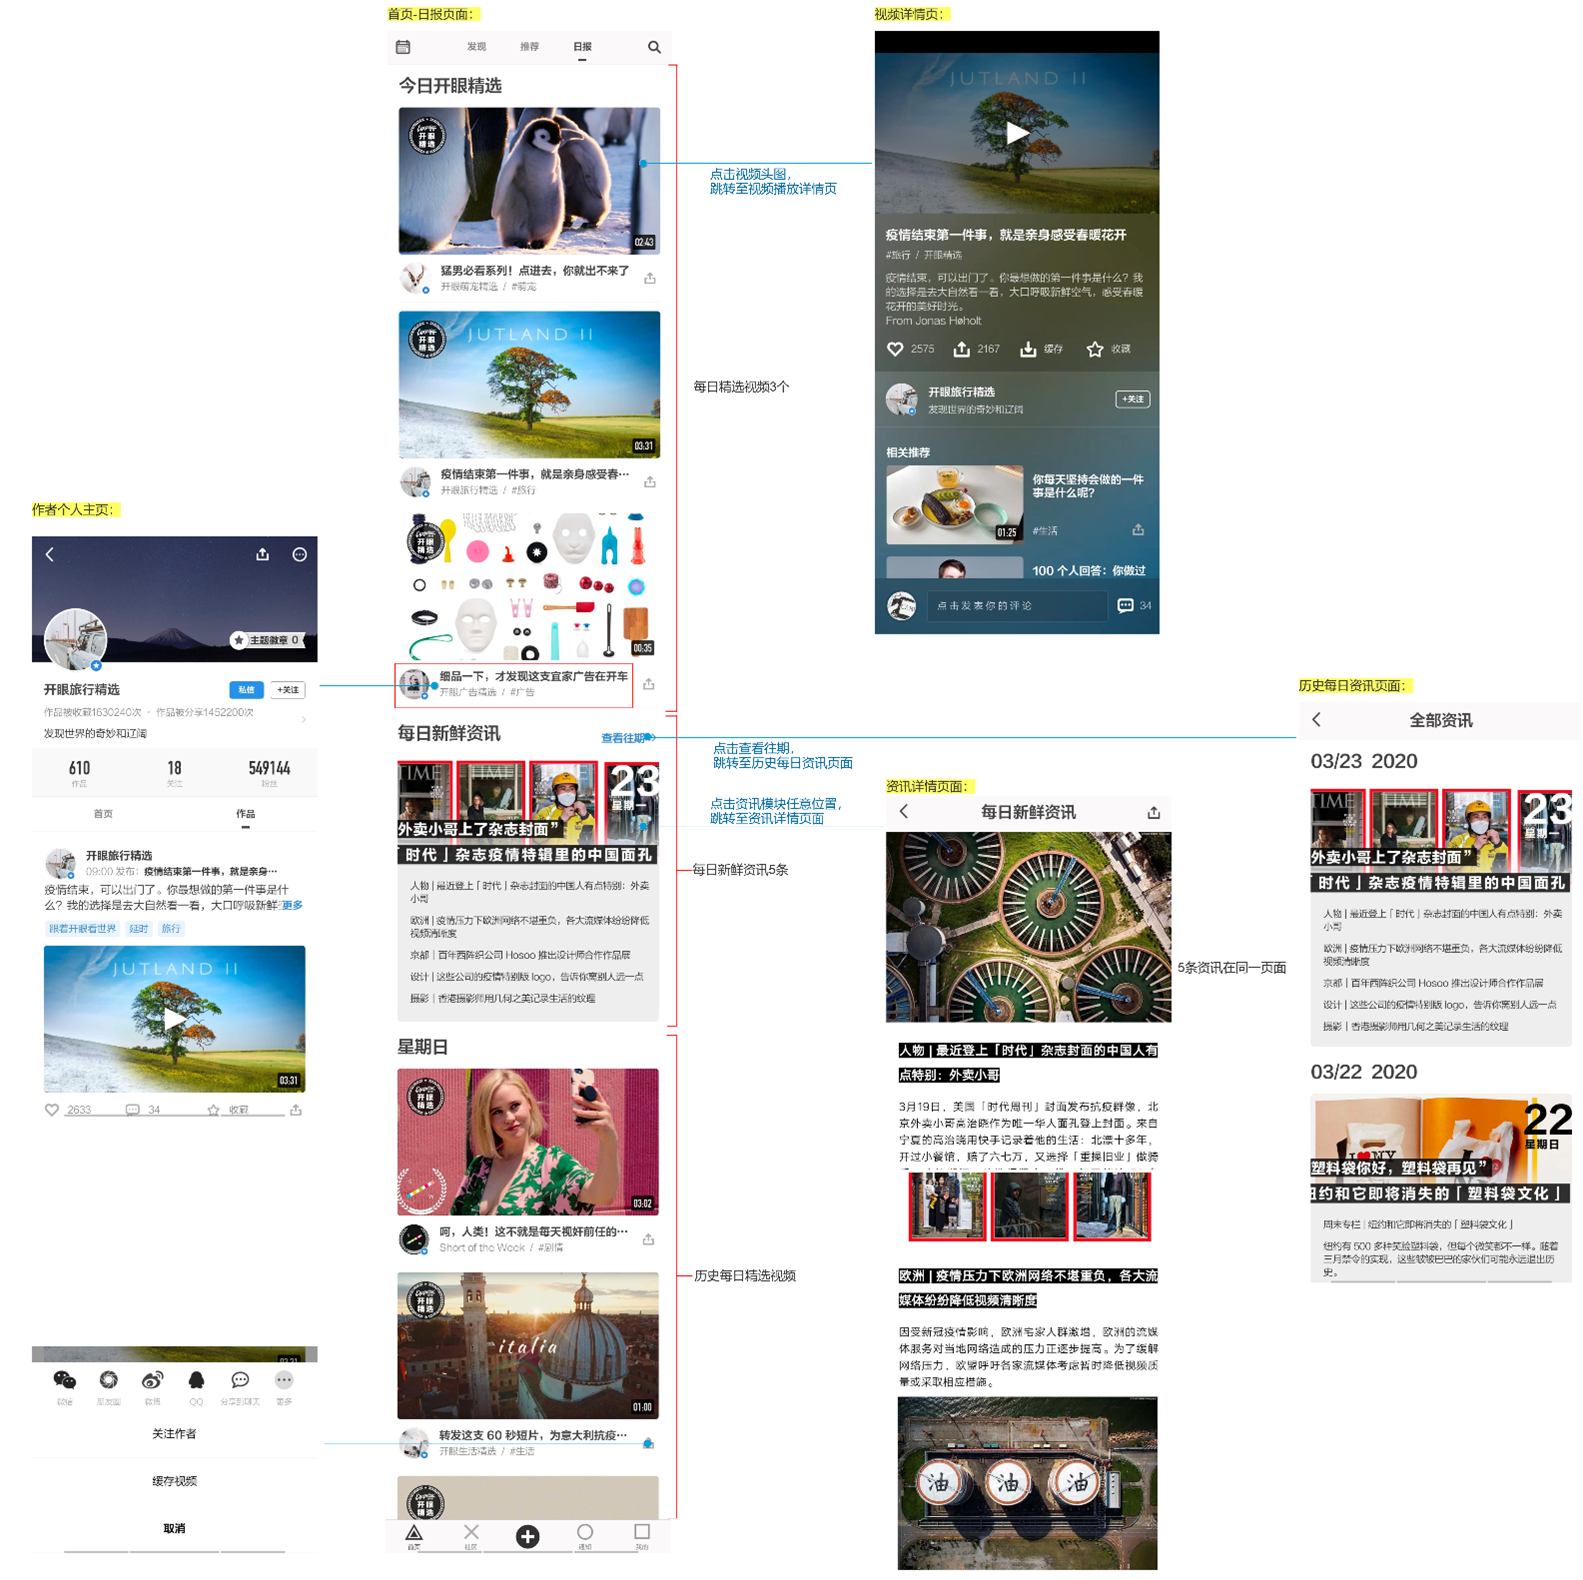 产品分析报告 | 开眼Eyepetizer，精选短视频内容社区，让你大开眼界